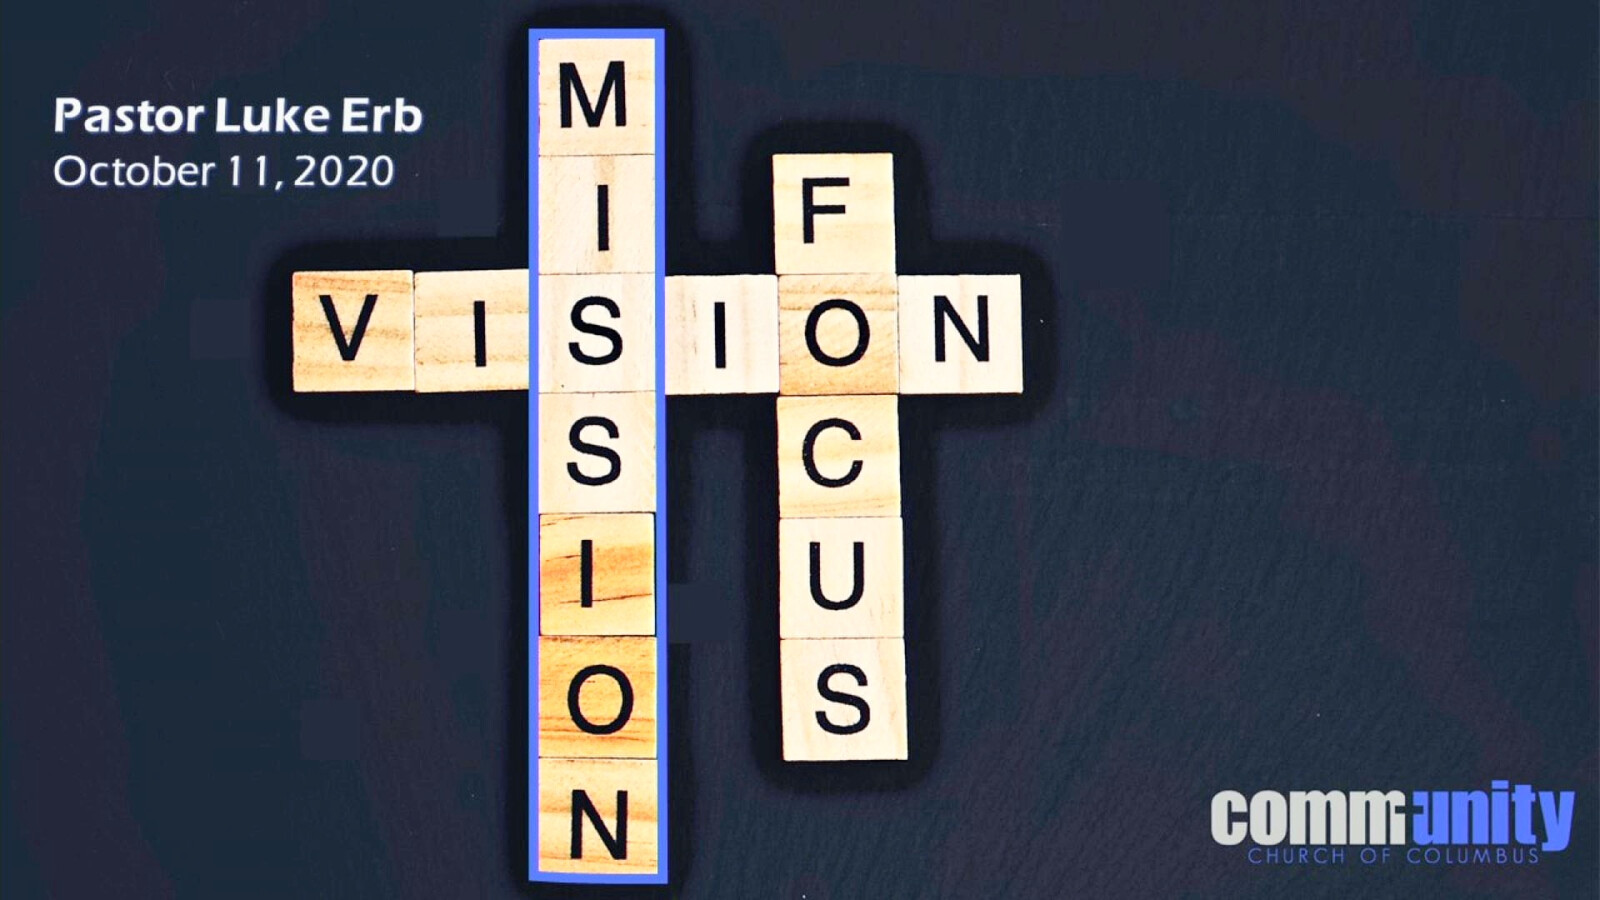 Mission - Vision - Focus